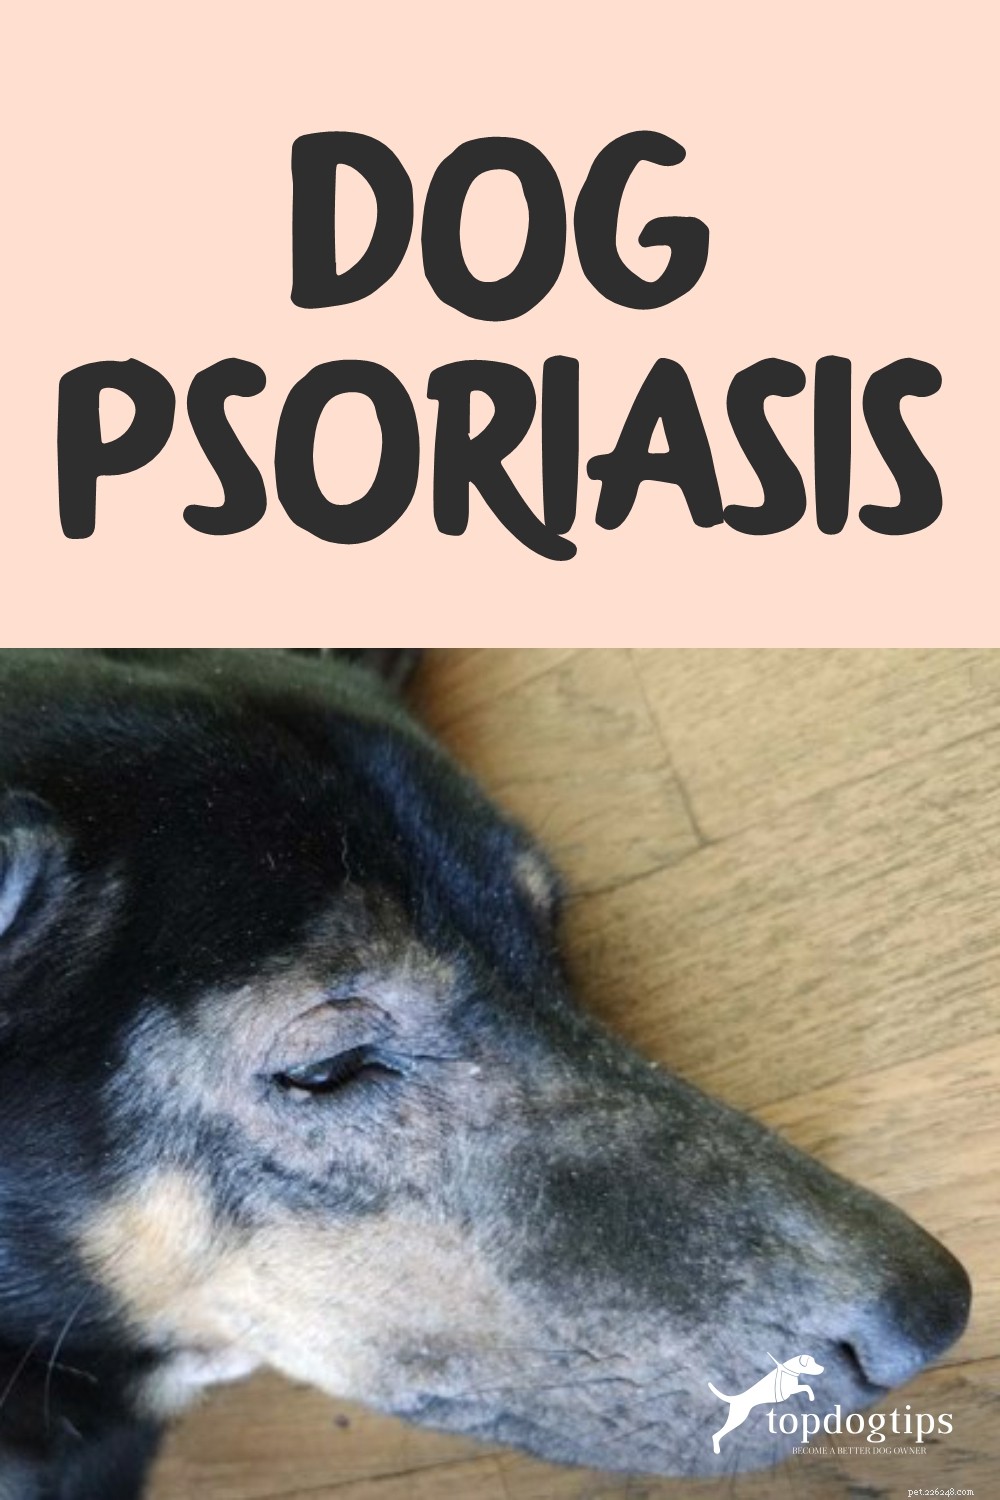 Psoriasis du chien :signes, causes, traitement et prévention